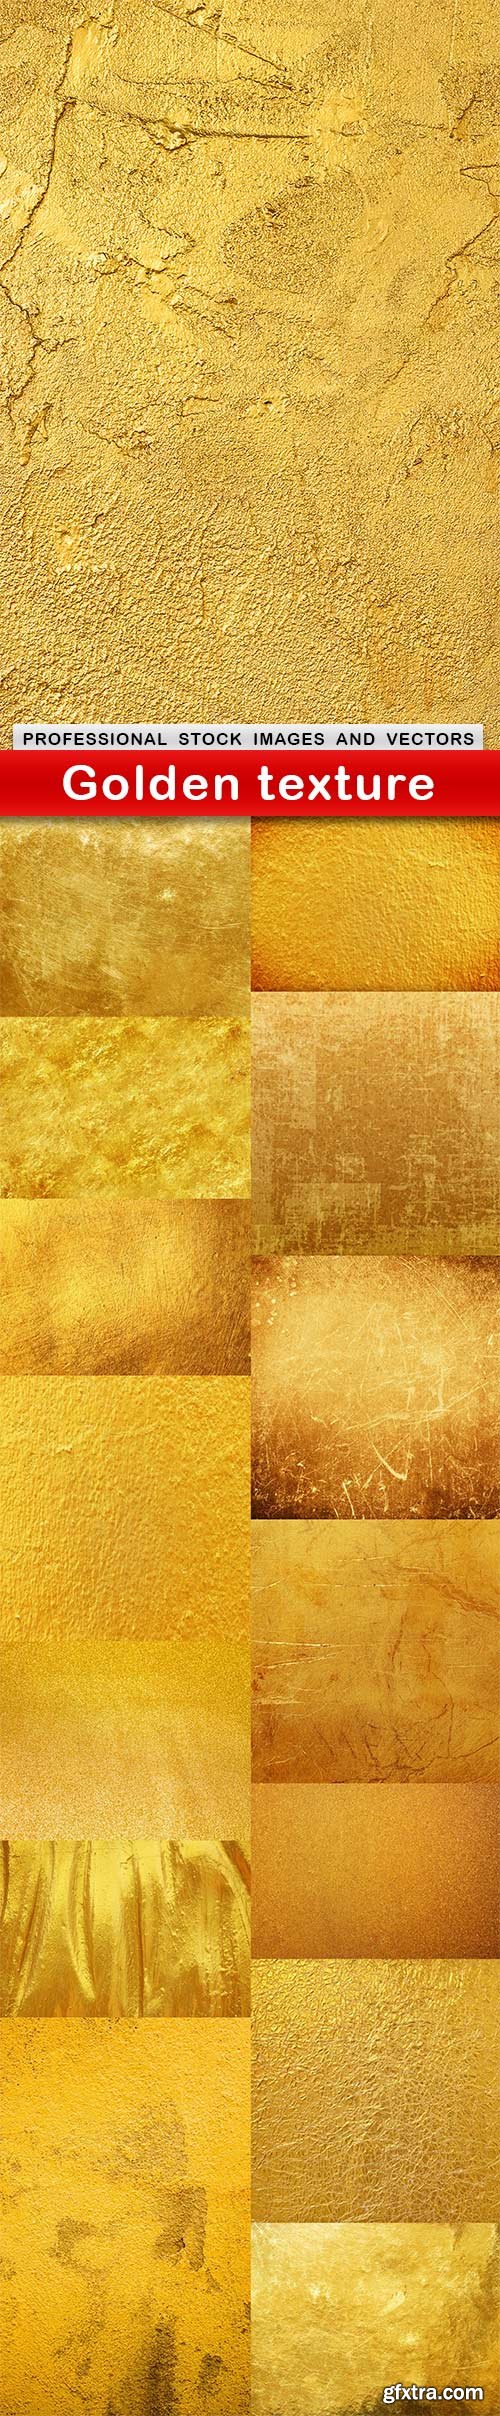 Golden texture - 15 UHQ JPEG